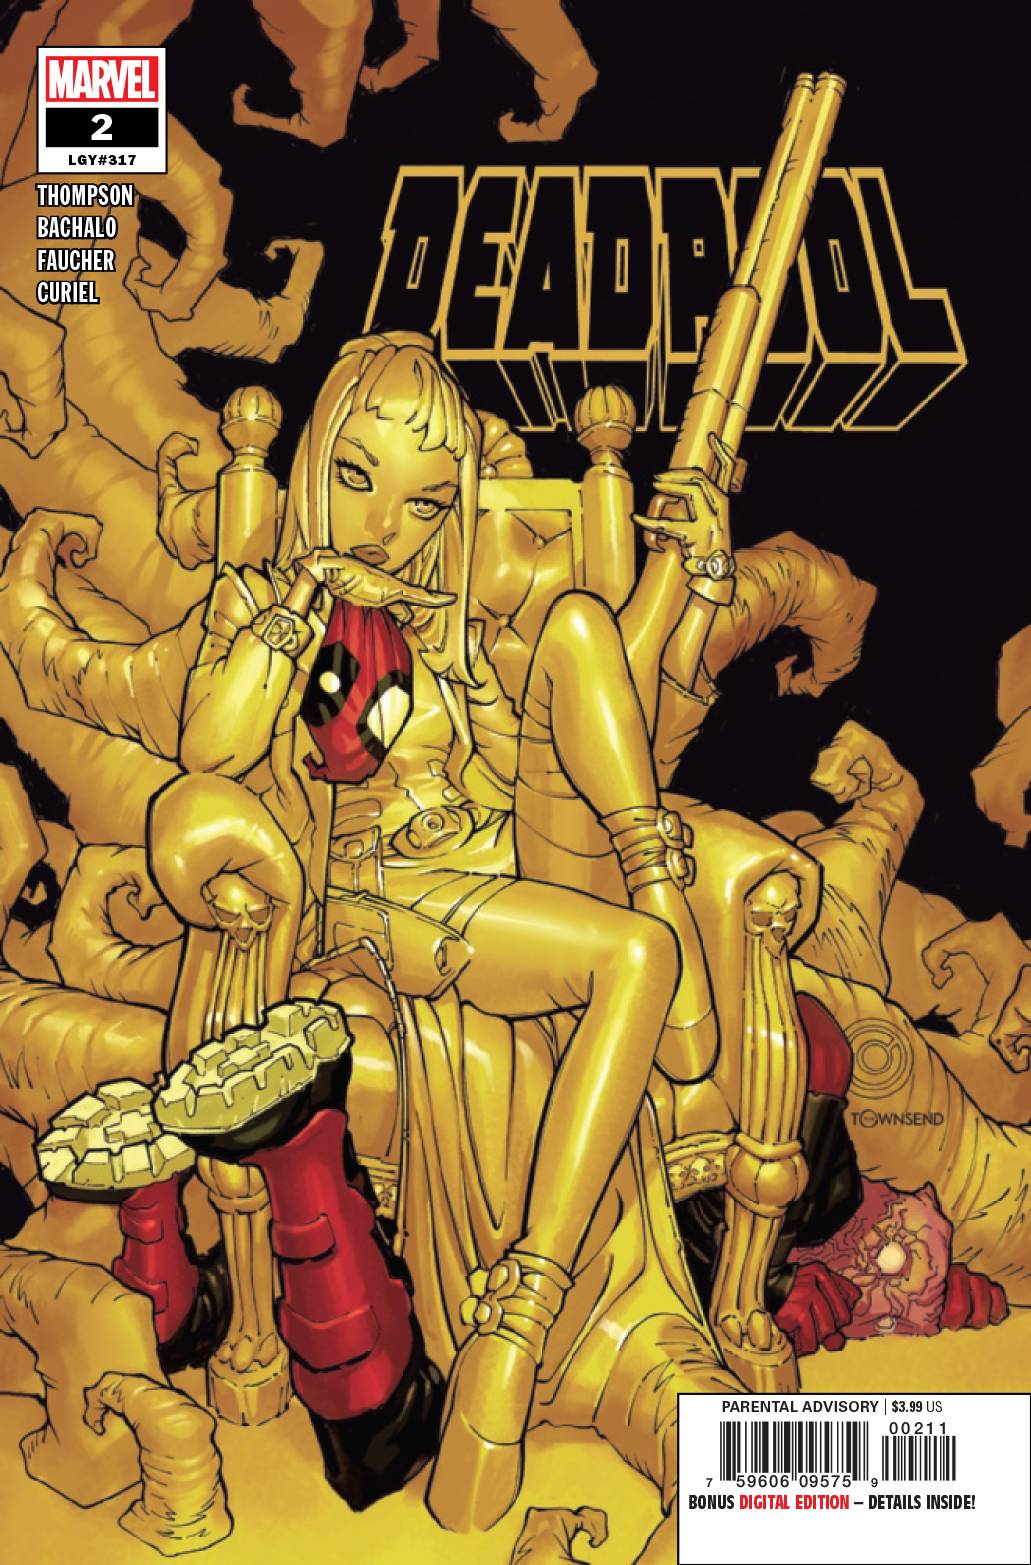 Deadpool (7th Series) 2 Comic Book NM